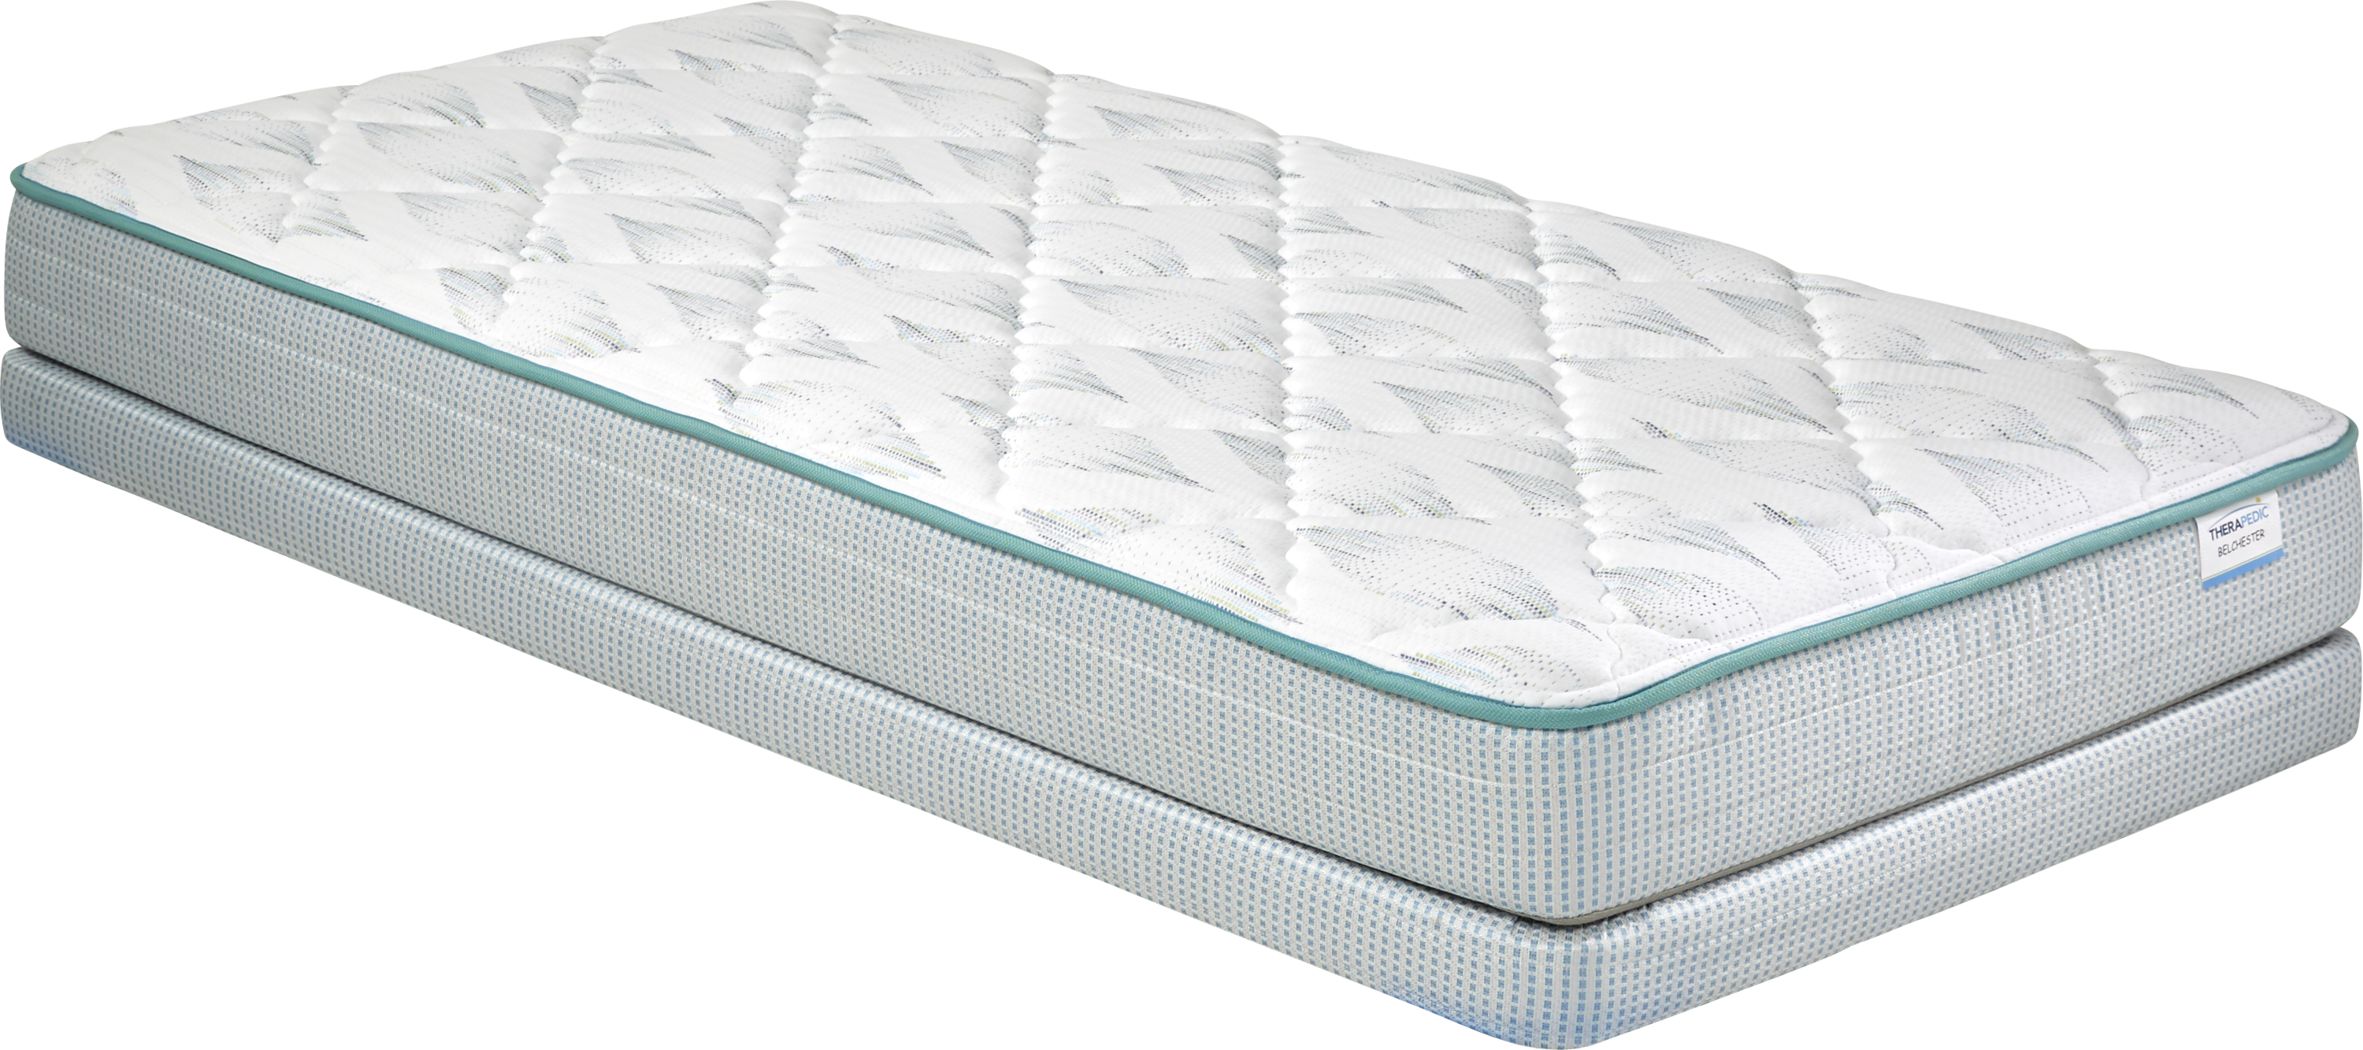 twin size therapeutic mattress